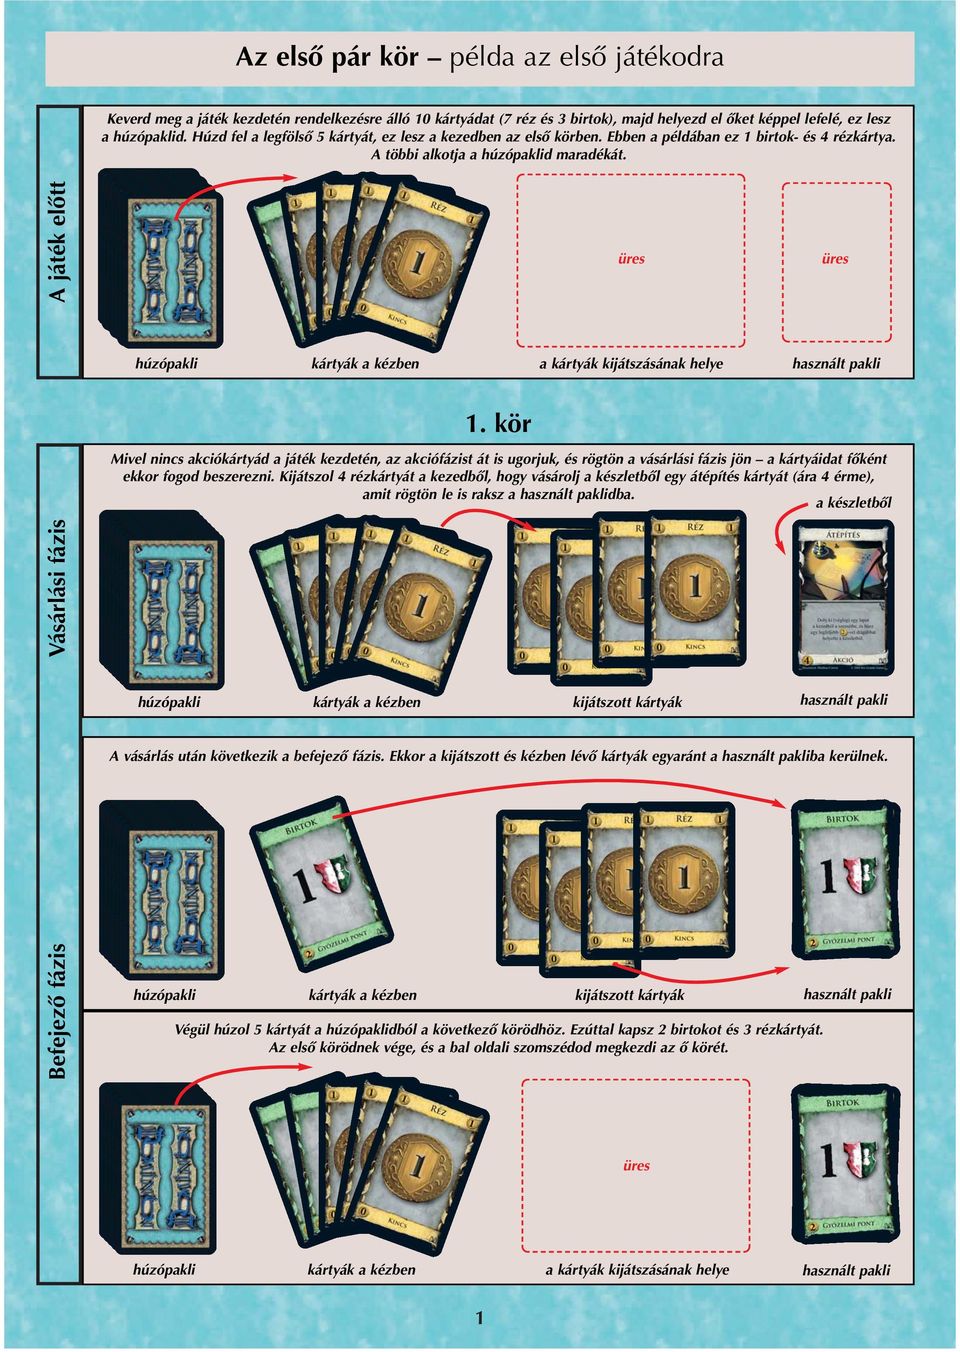 A játék előtt üres üres húzópakli kártyák a kézben a kártyák kijátszásának helye használt pakli 1.